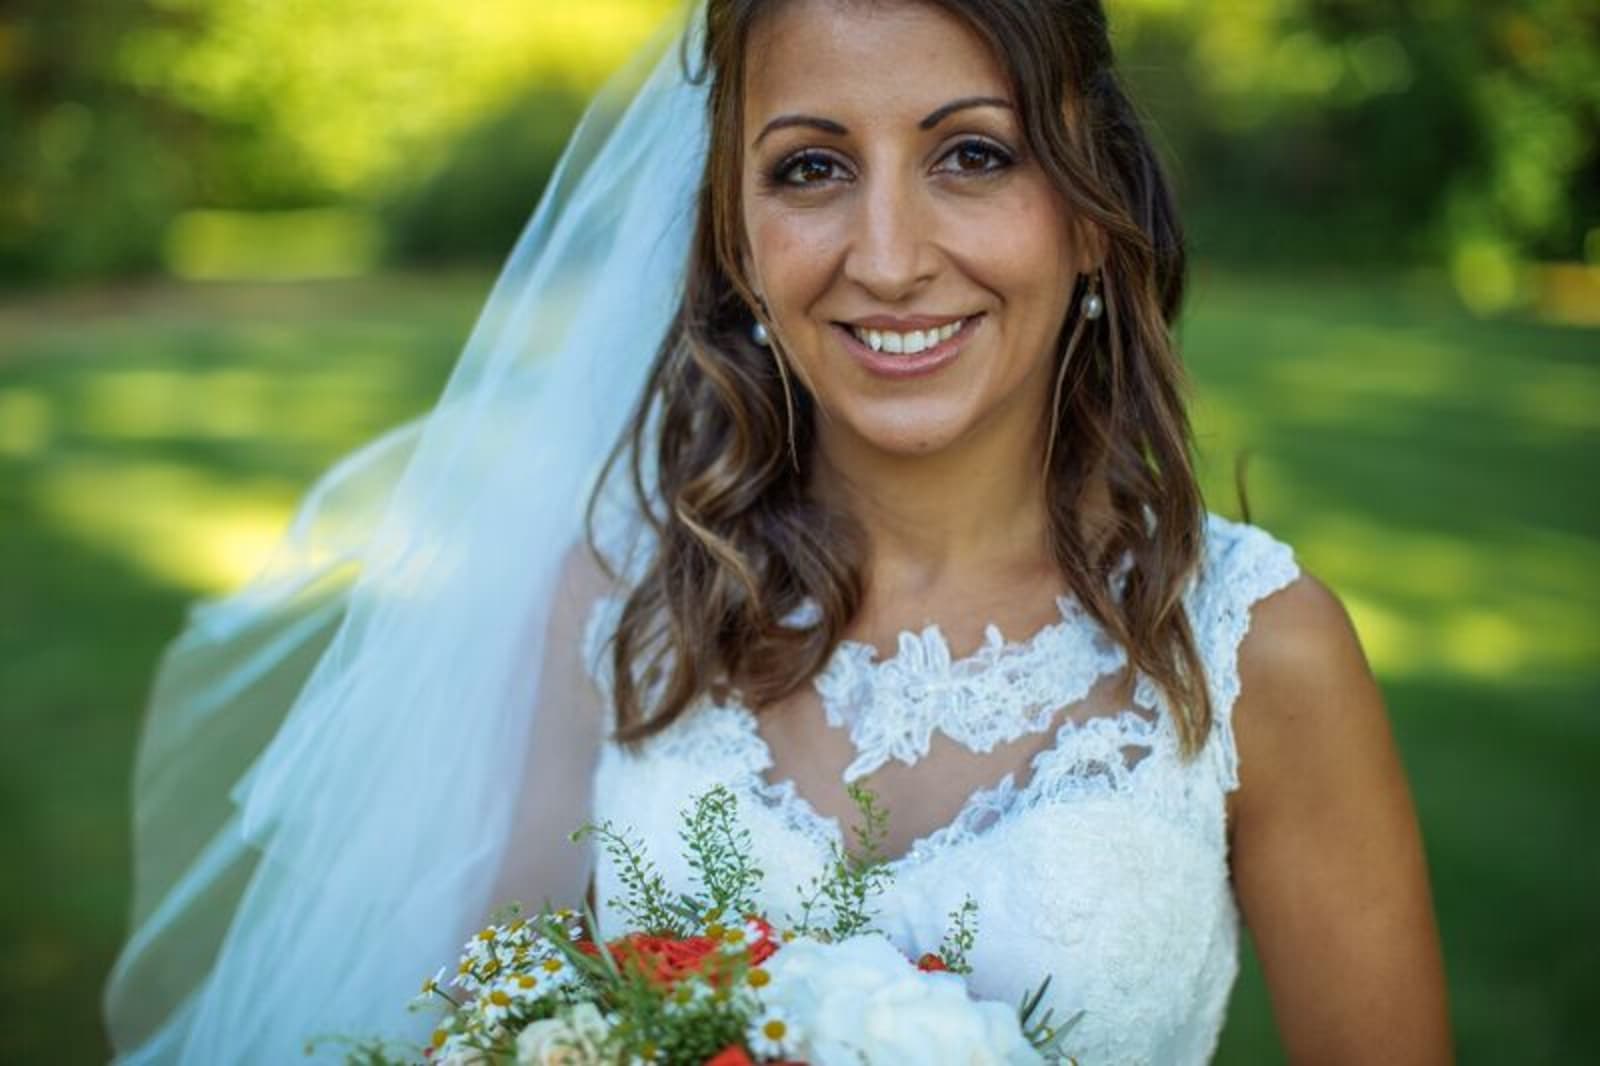 South East | Sussex | Crawley | Summer | Outdoor | Garden | Blue | Orange | Manor House | Real Wedding | Hajley Photography #Bridebook #RealWedding #WeddingIdeas Bridebook.co.uk 